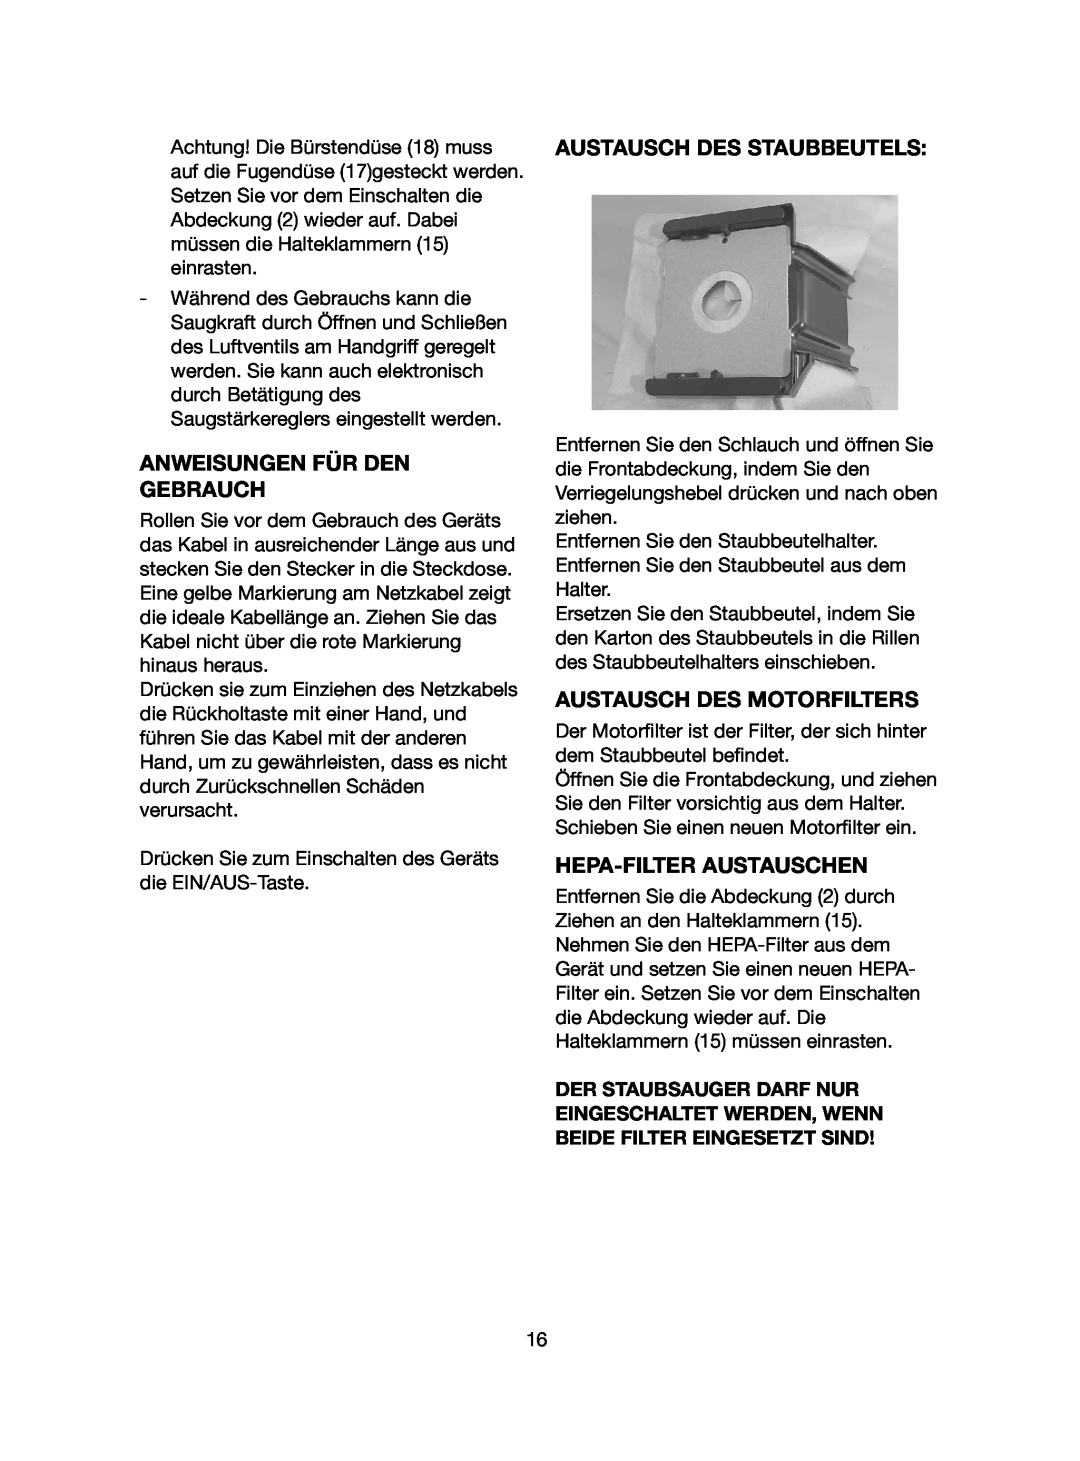 Ide Line 740-108 manual Anweisungen Für Den Gebrauch, Austausch Des Staubbeutels, Austausch Des Motorfilters 